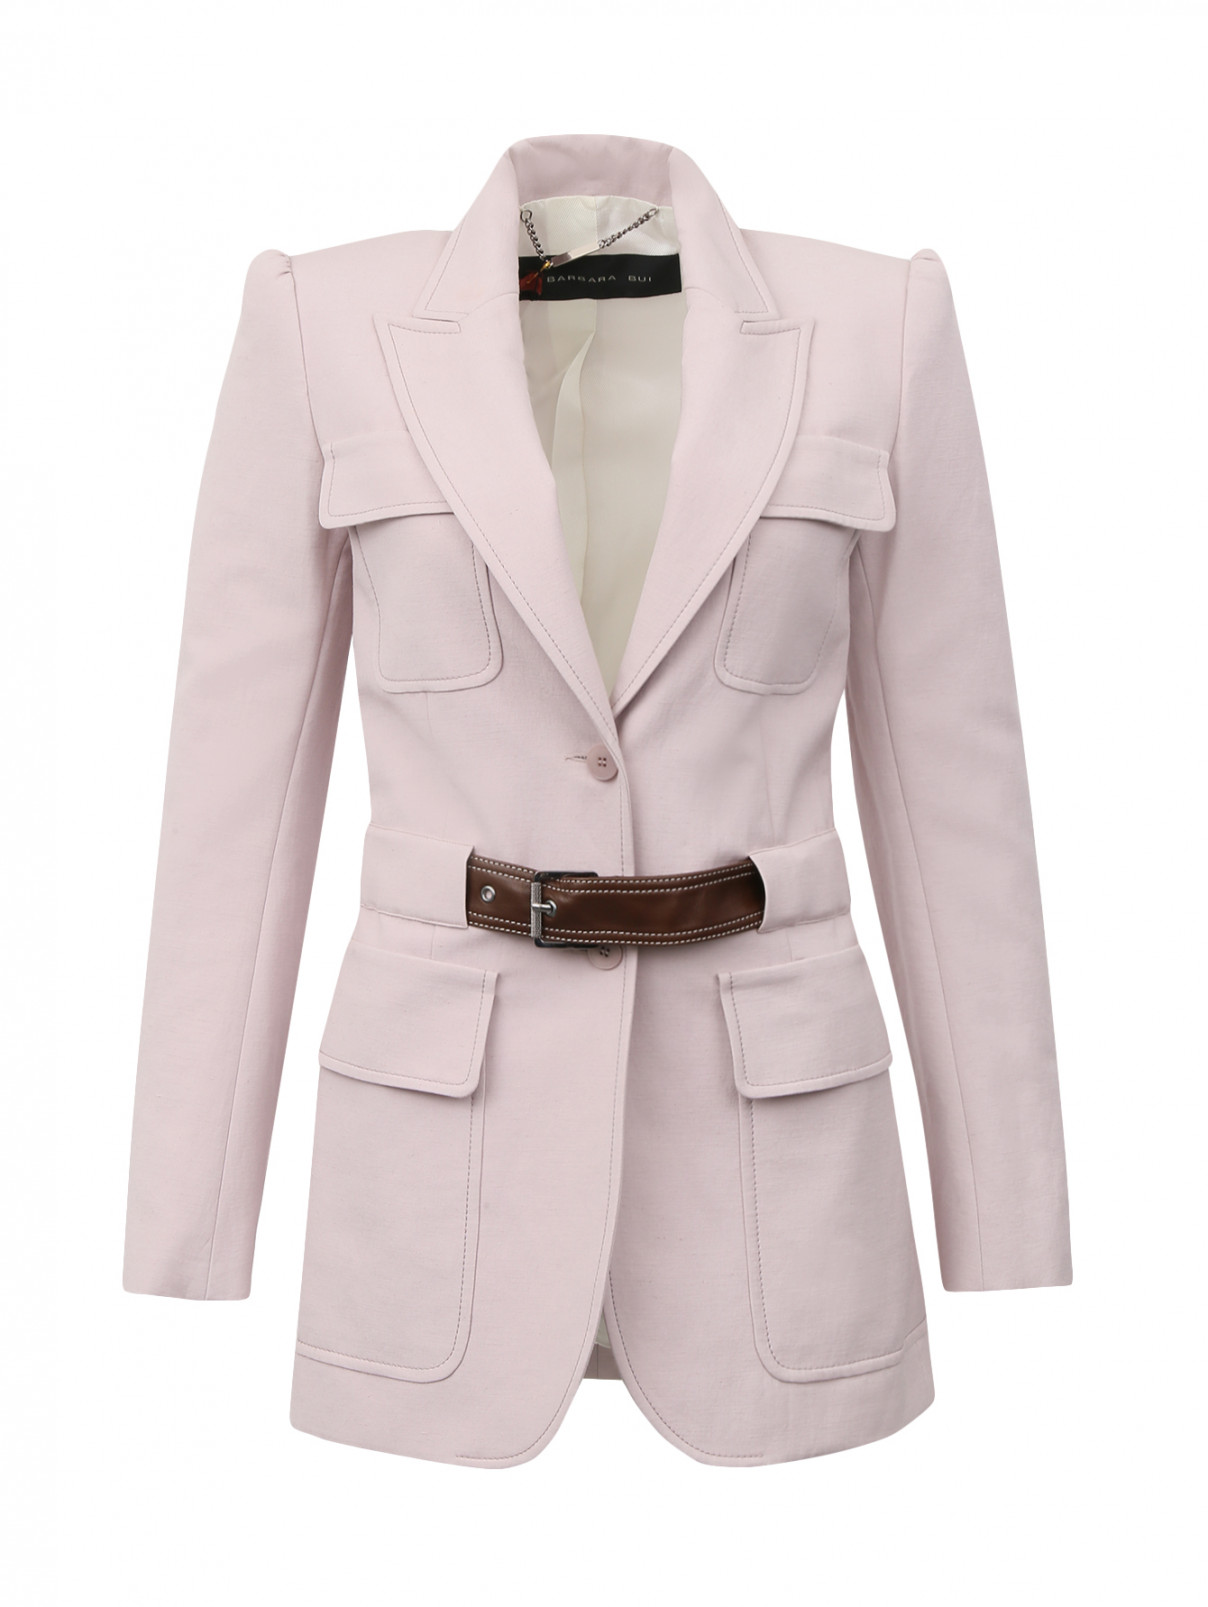 Жакет удлиненный с накладными карманами под пояс Barbara Bui  –  Общий вид  – Цвет:  Розовый